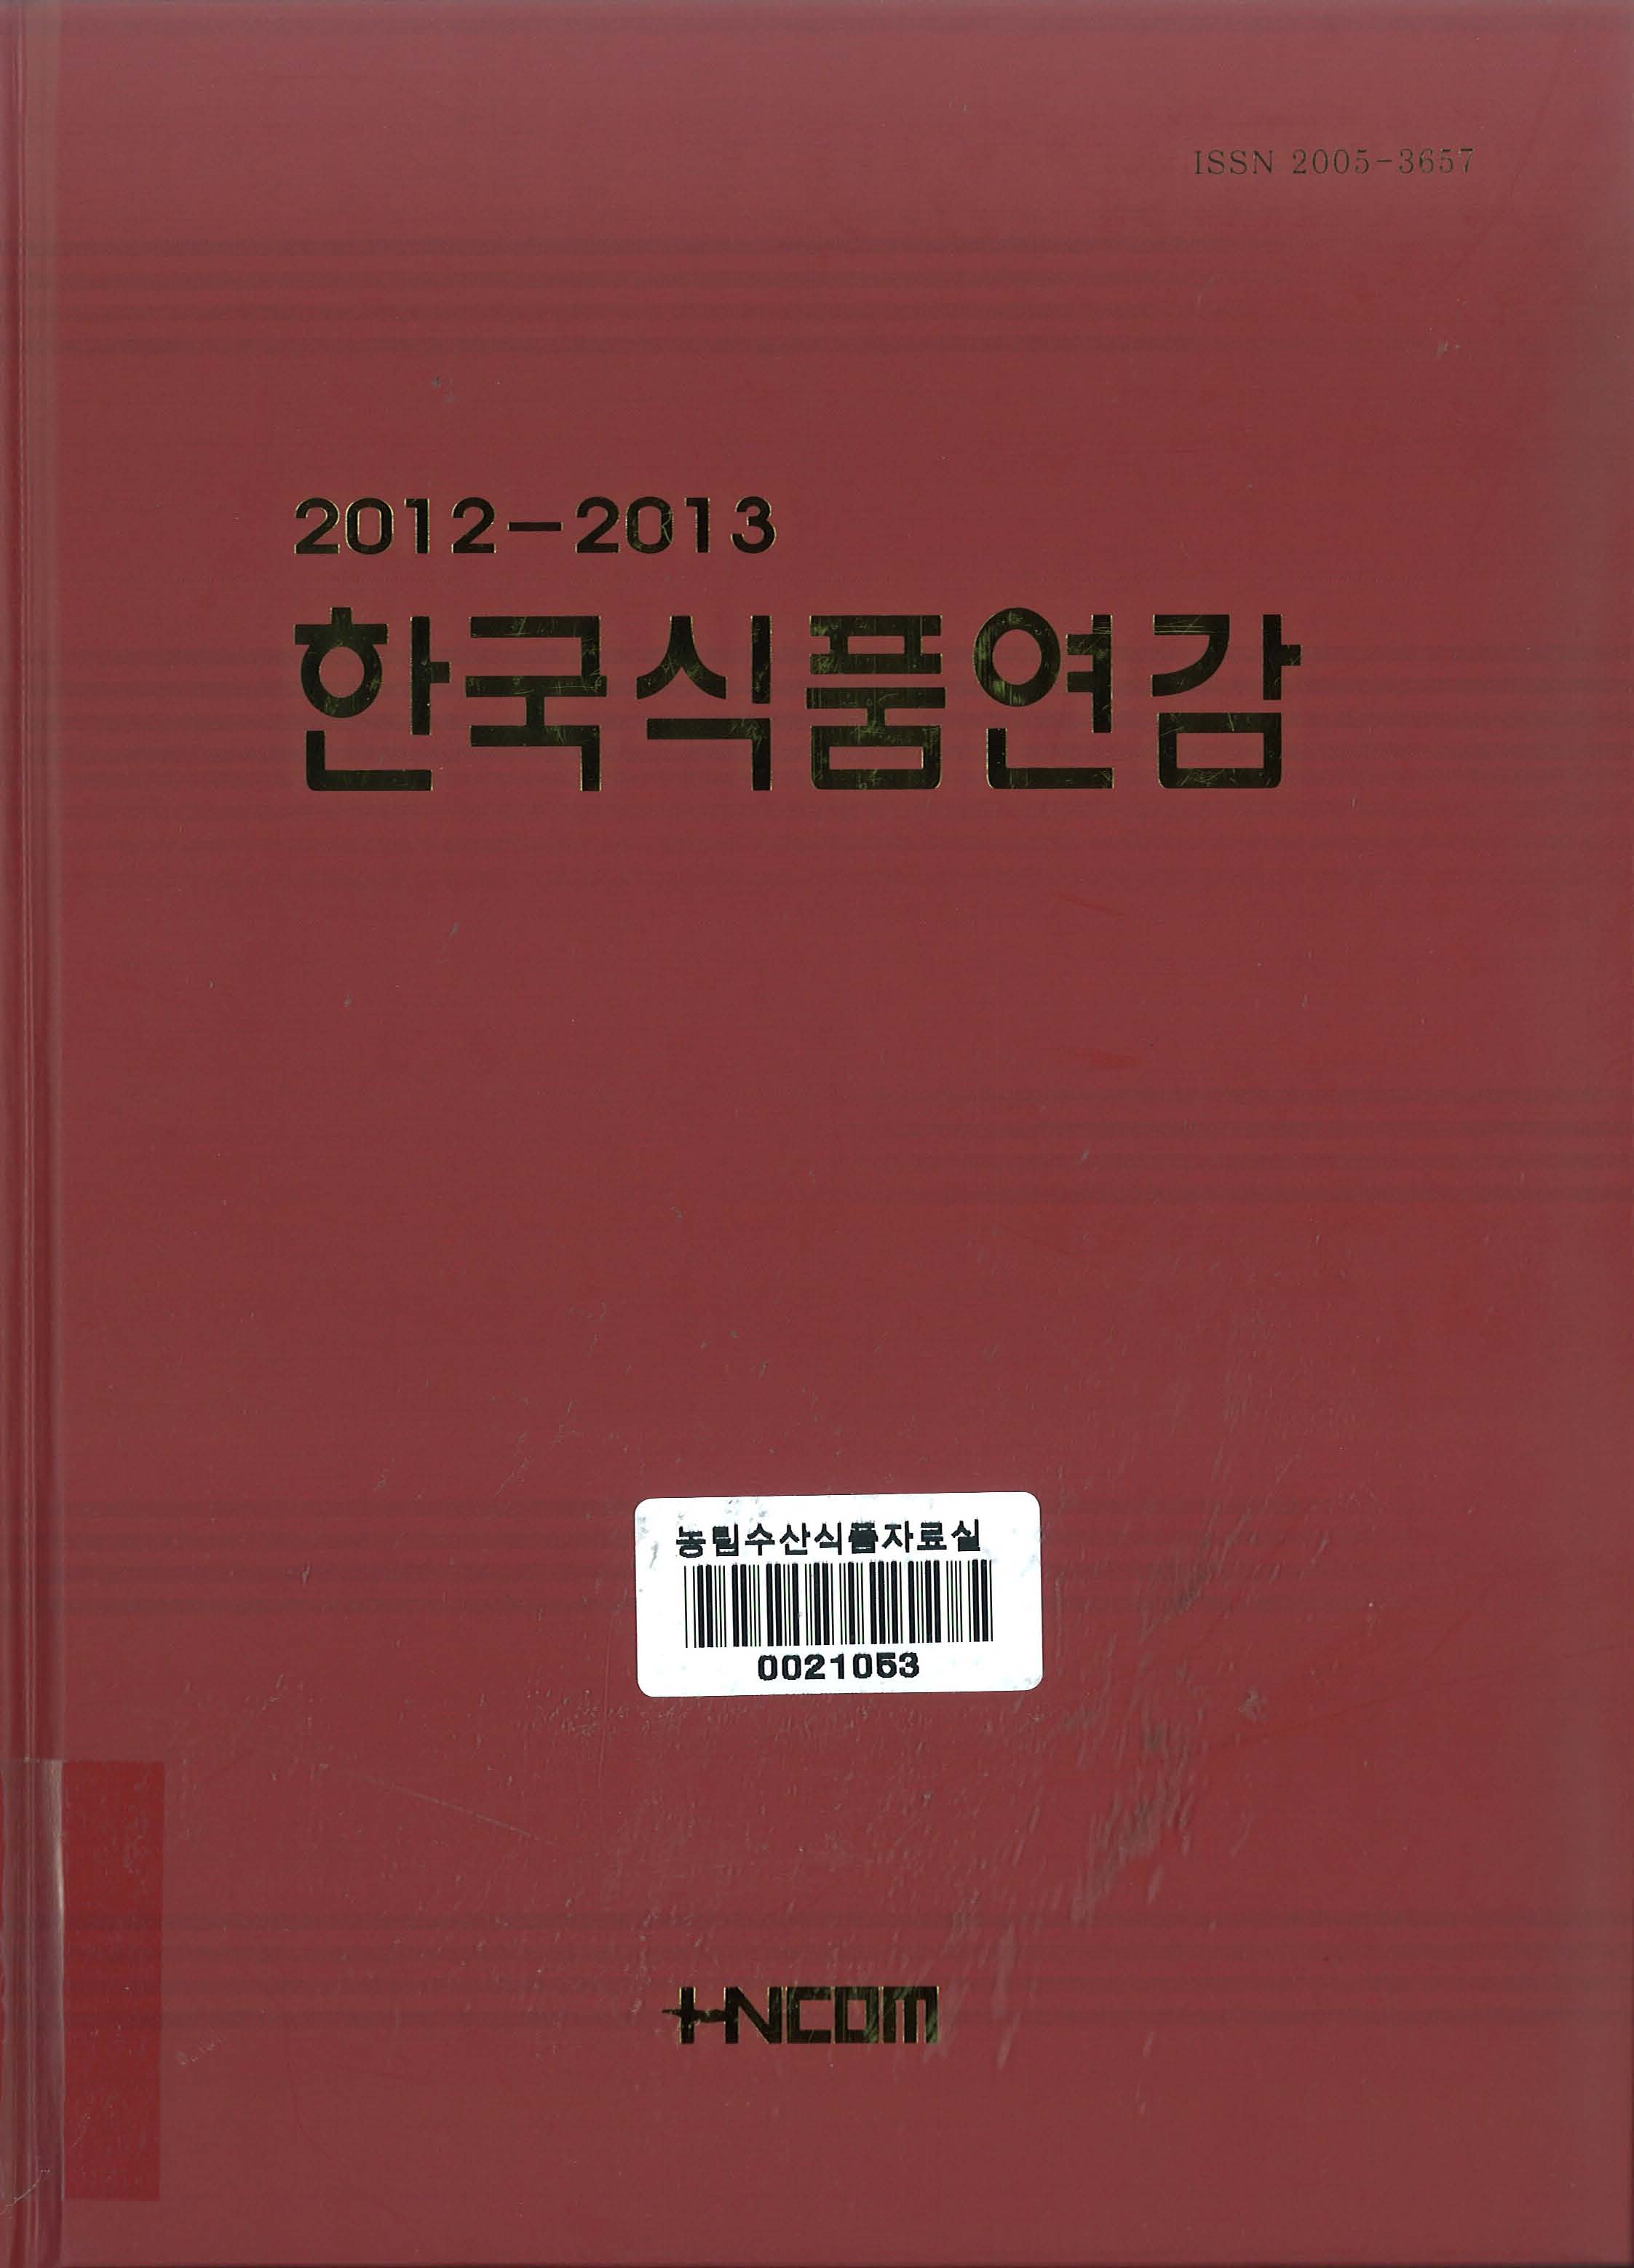 한국식품연감. 2012-2013